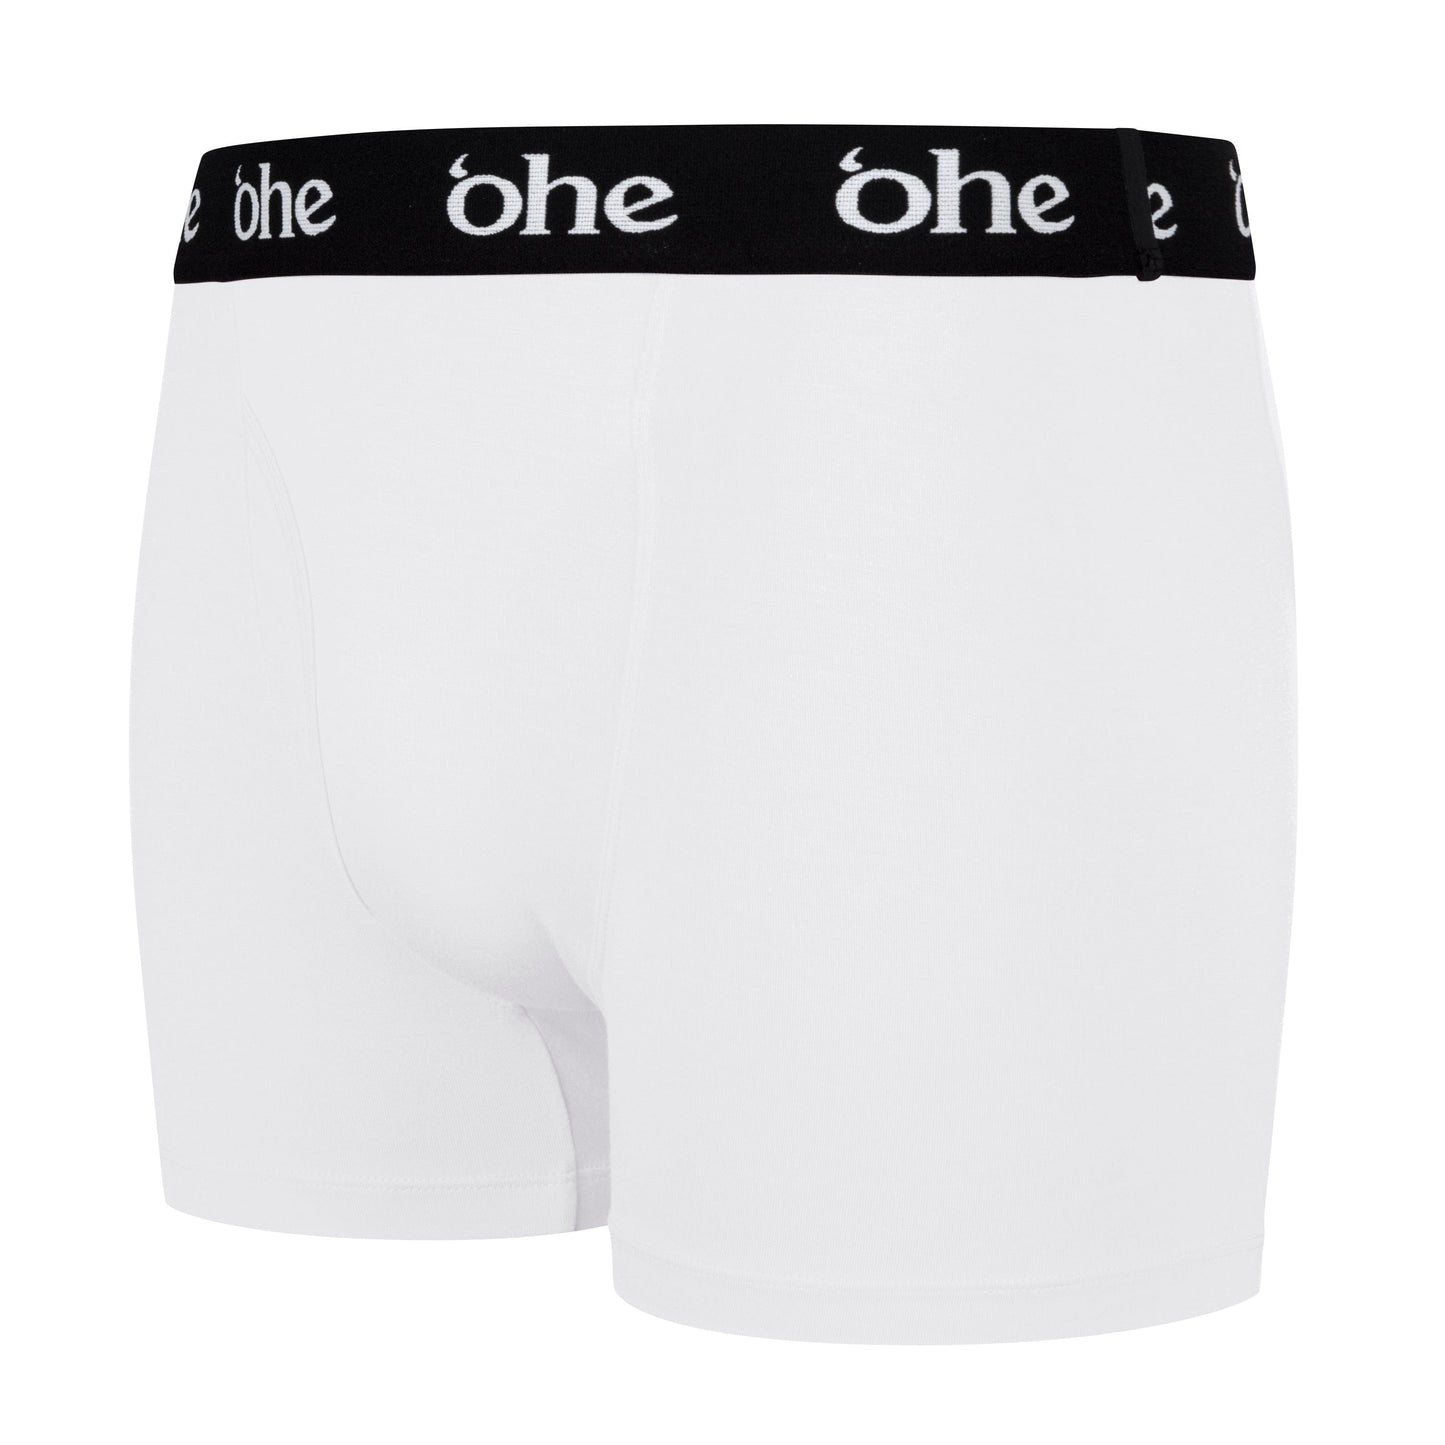 White Bamboo Underwear - Men's Boxers – 'ohe underwear